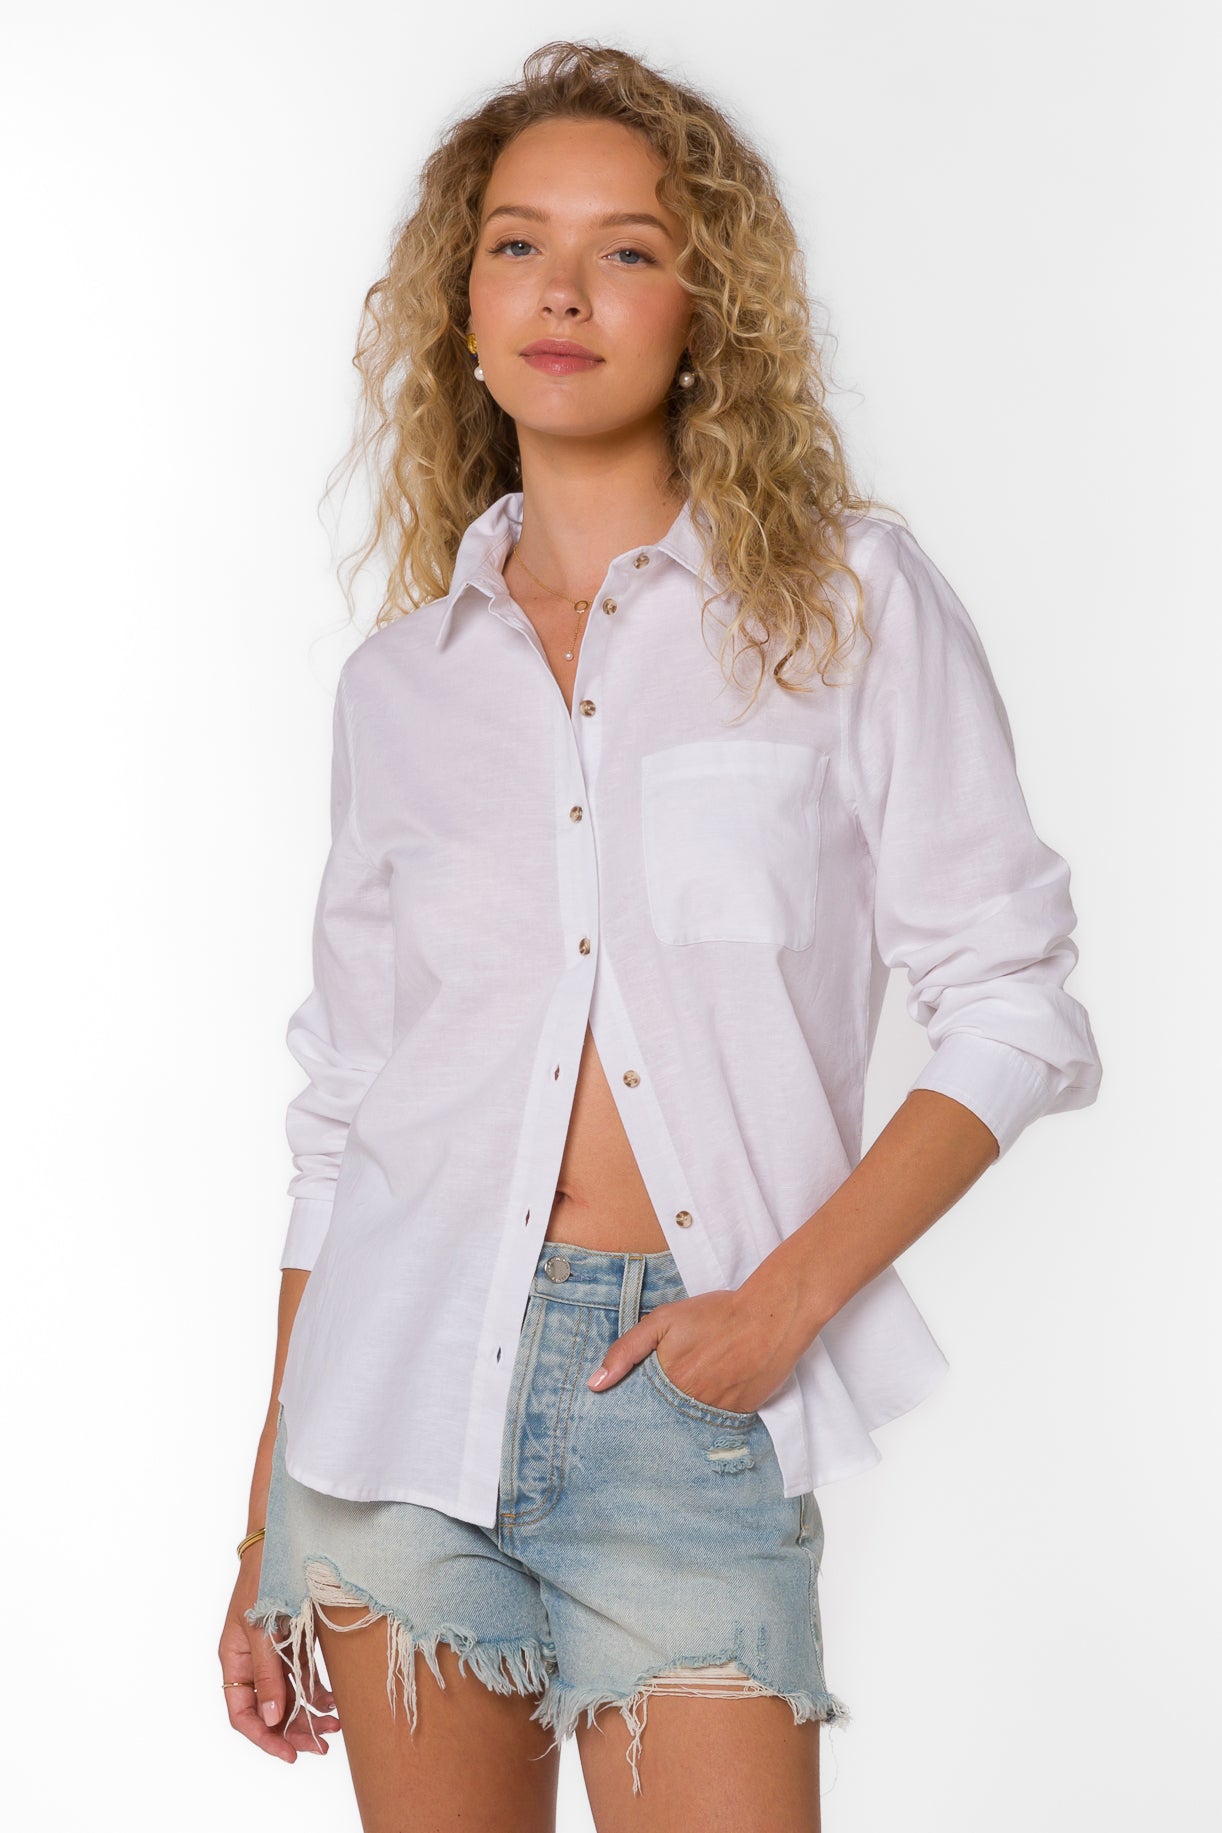 Belle White Shirt - Tops - Velvet Heart Clothing